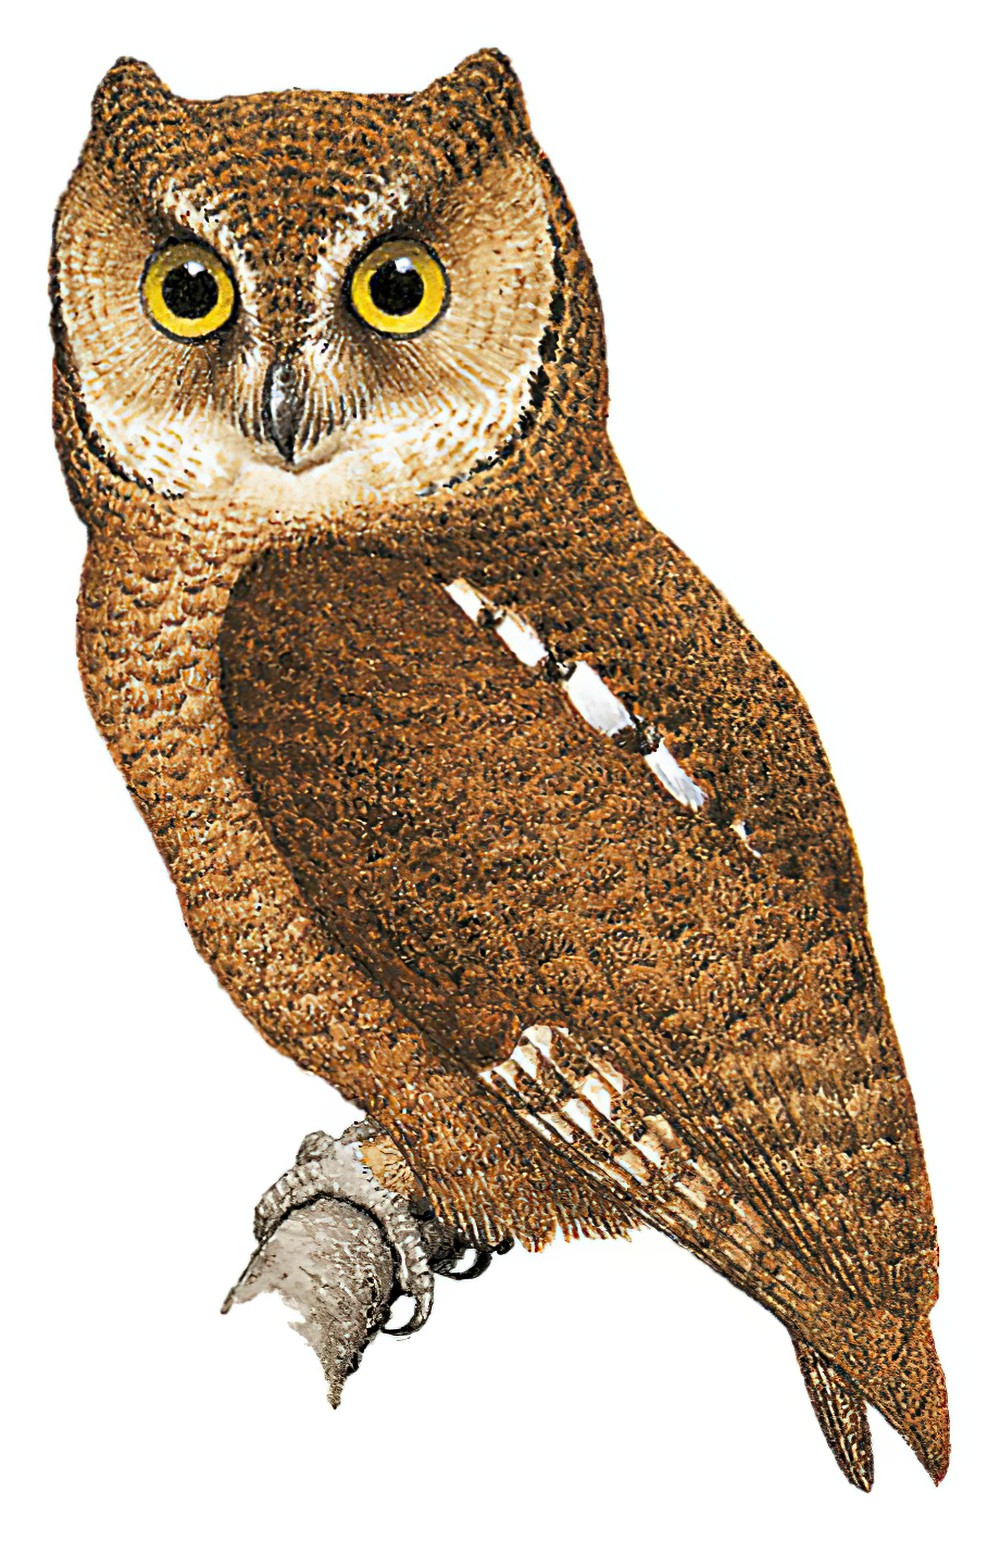 Nicobar Scops-Owl / Otus alius